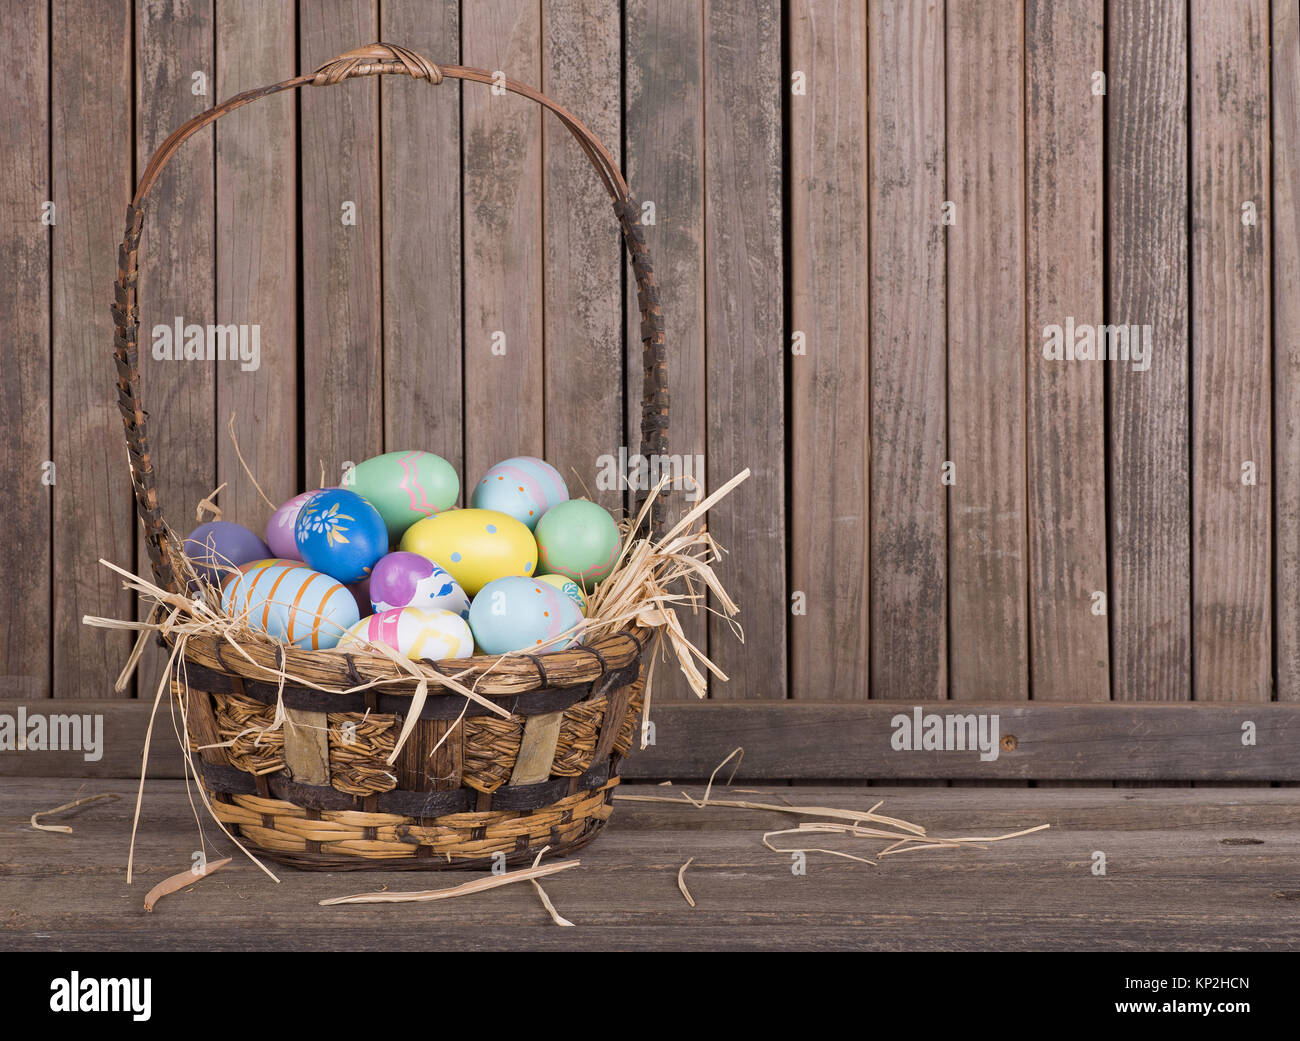 Les oeufs de Pâques colorés dans un panier sur une surface en bois Banque D'Images